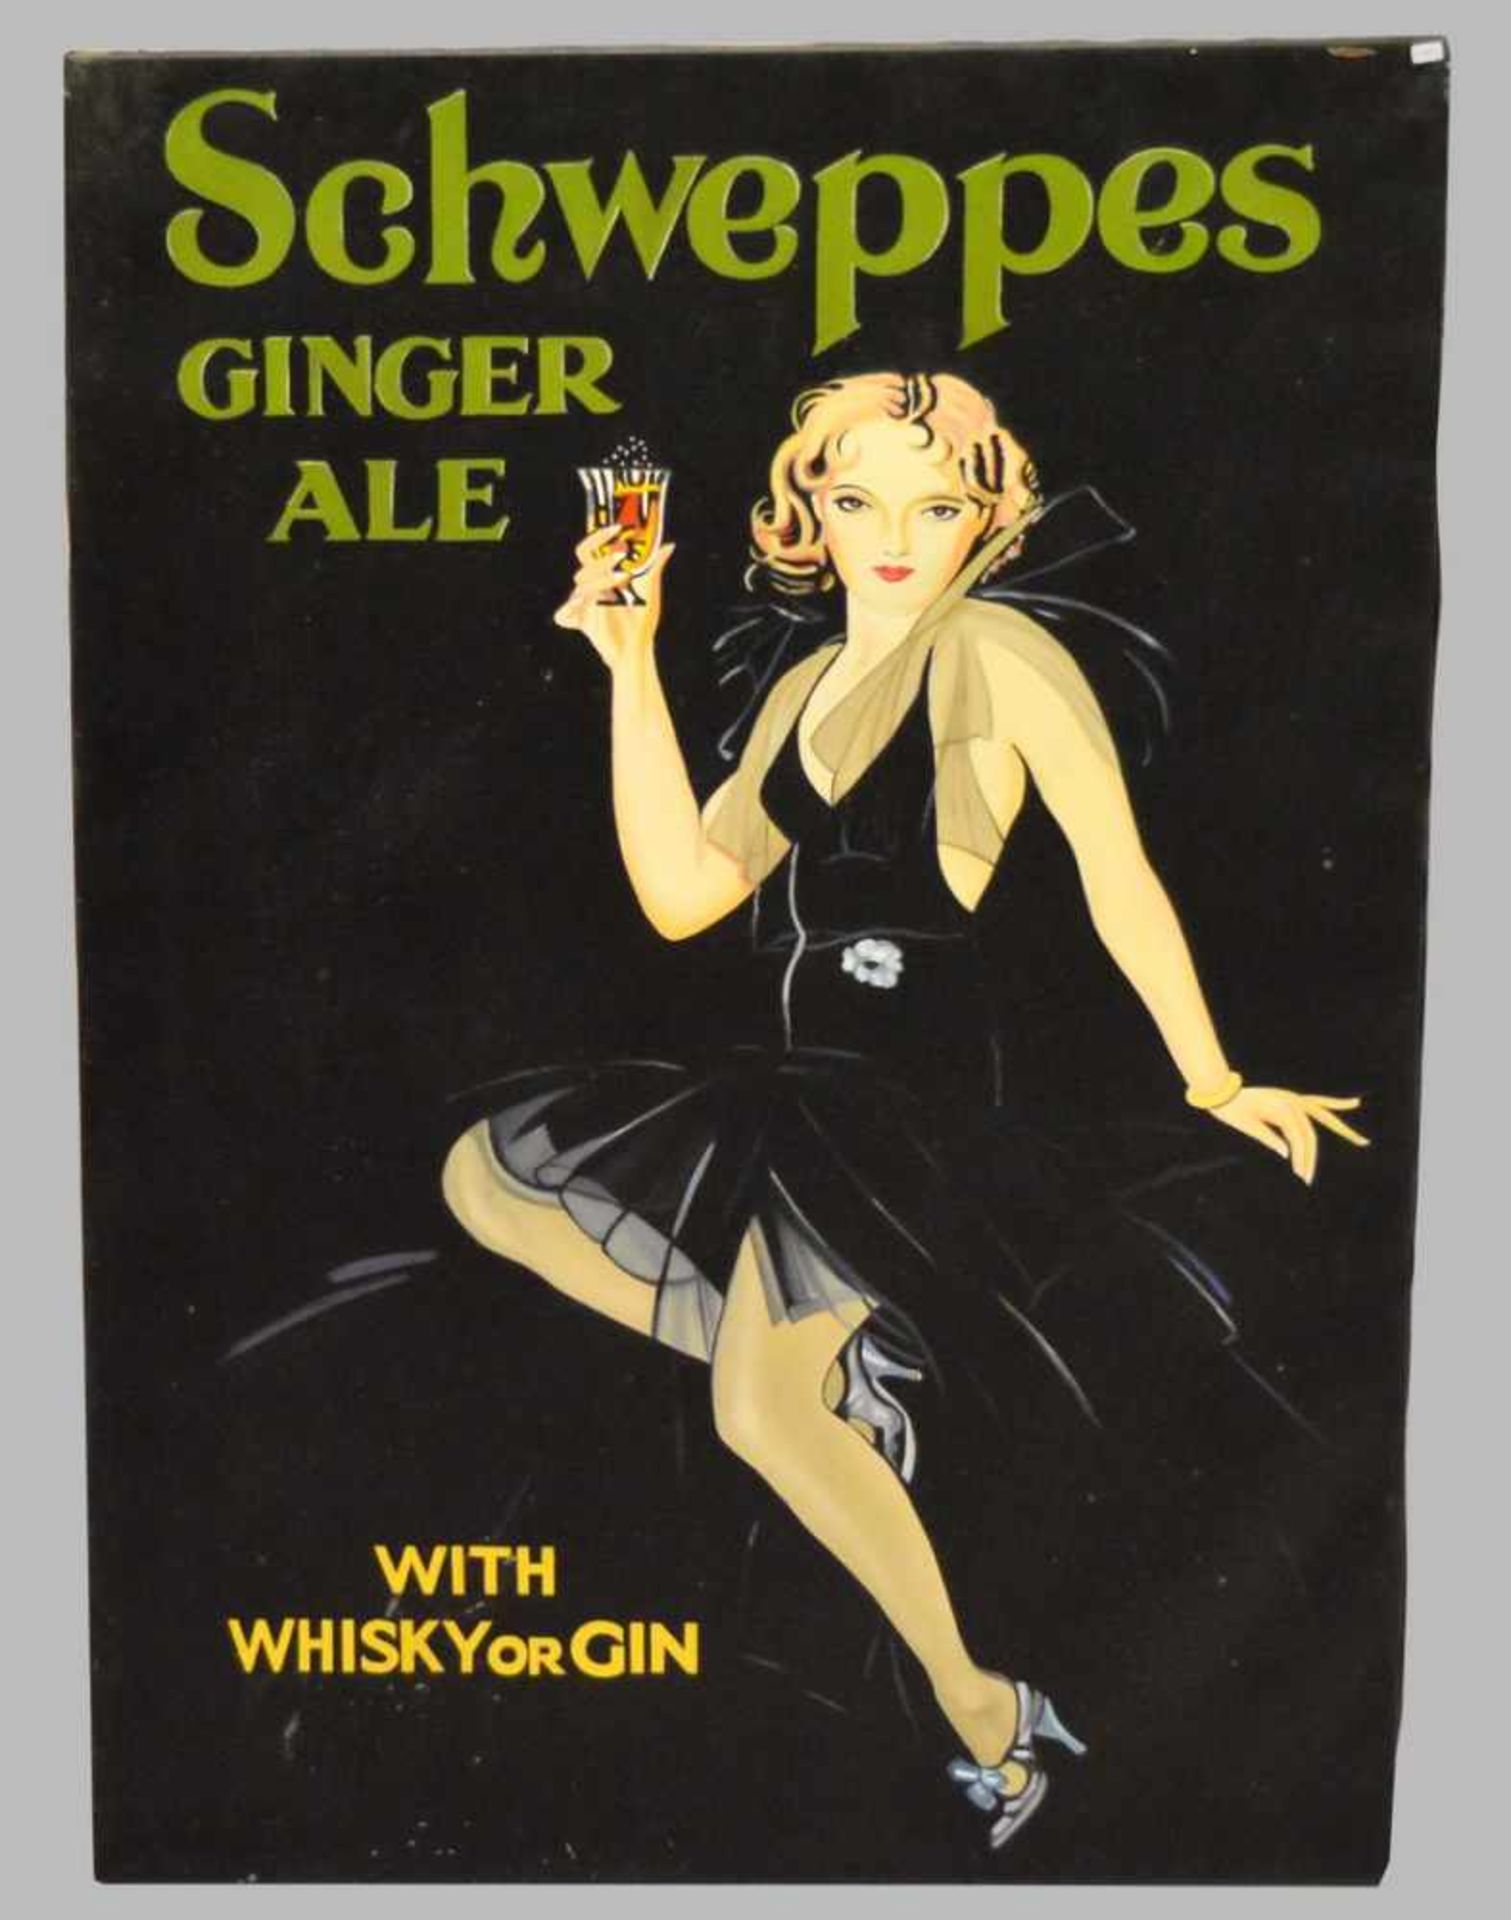 Werbeschild Schweppes Ginger Ale, mit Mädchen im schwarzen Kleid, Öl/Lwd., 80 X 110 cm, ohne Rahmen